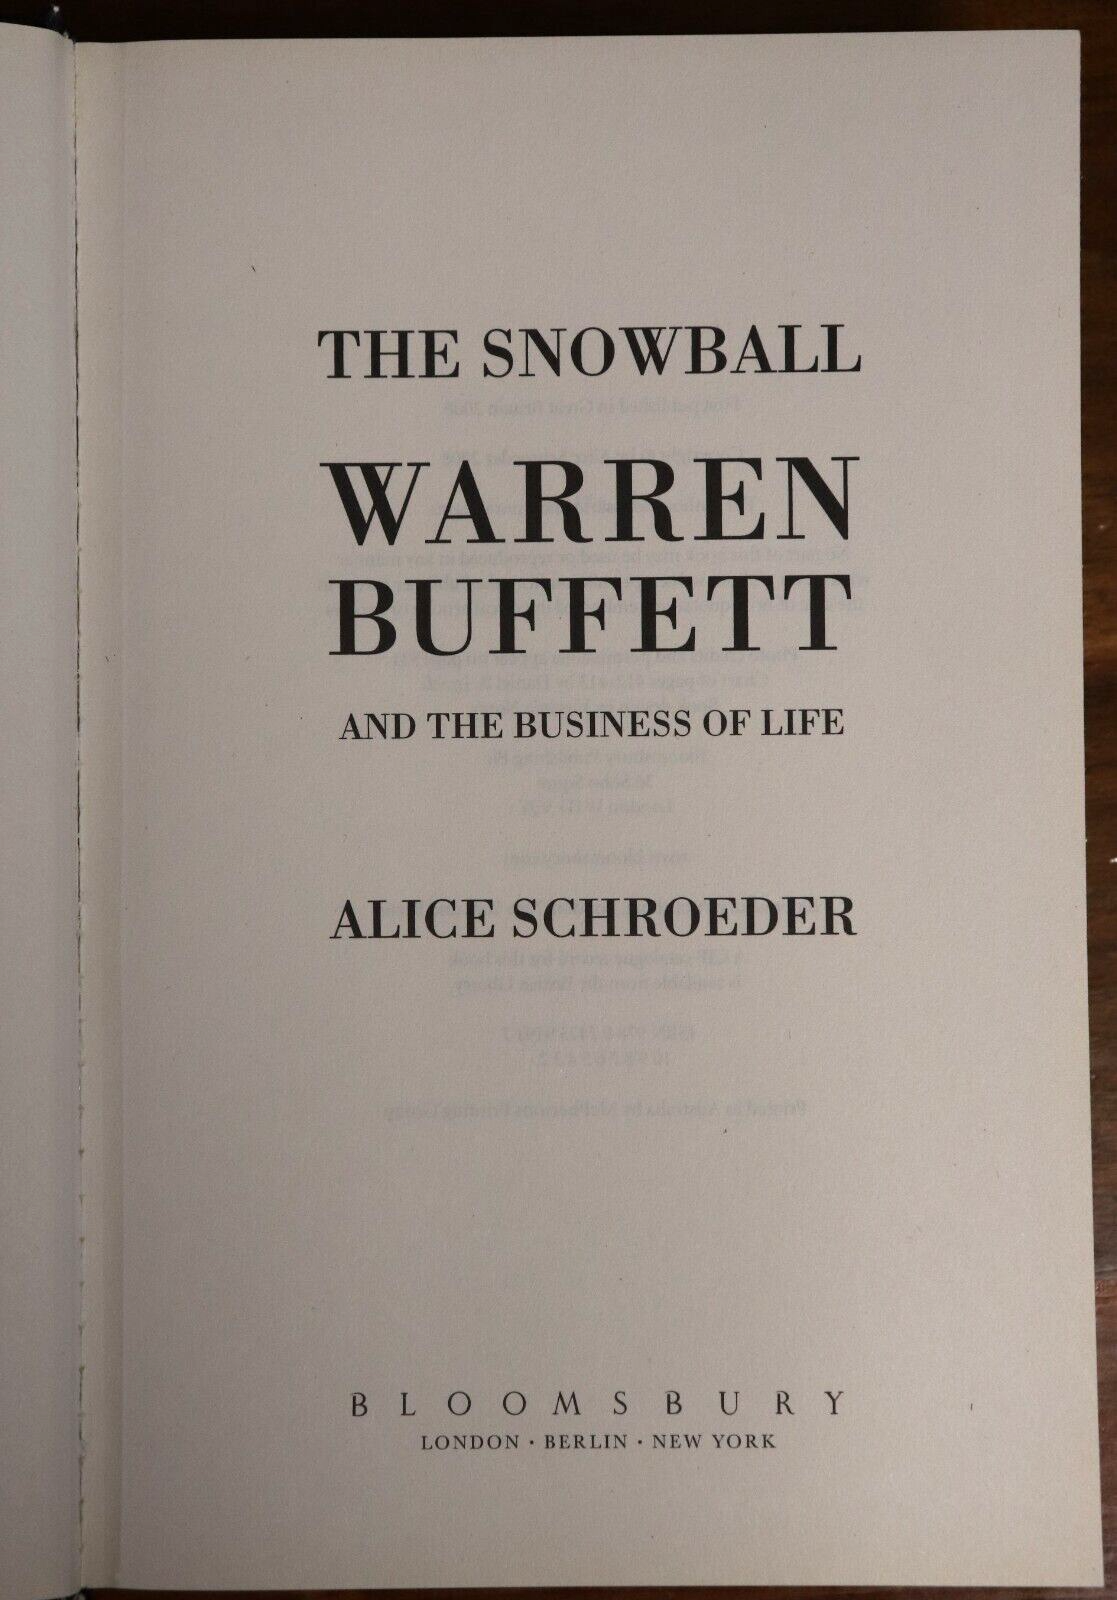 The Snowball: Warren Buffet Business Of Life - 2008 - Financial Book - 0